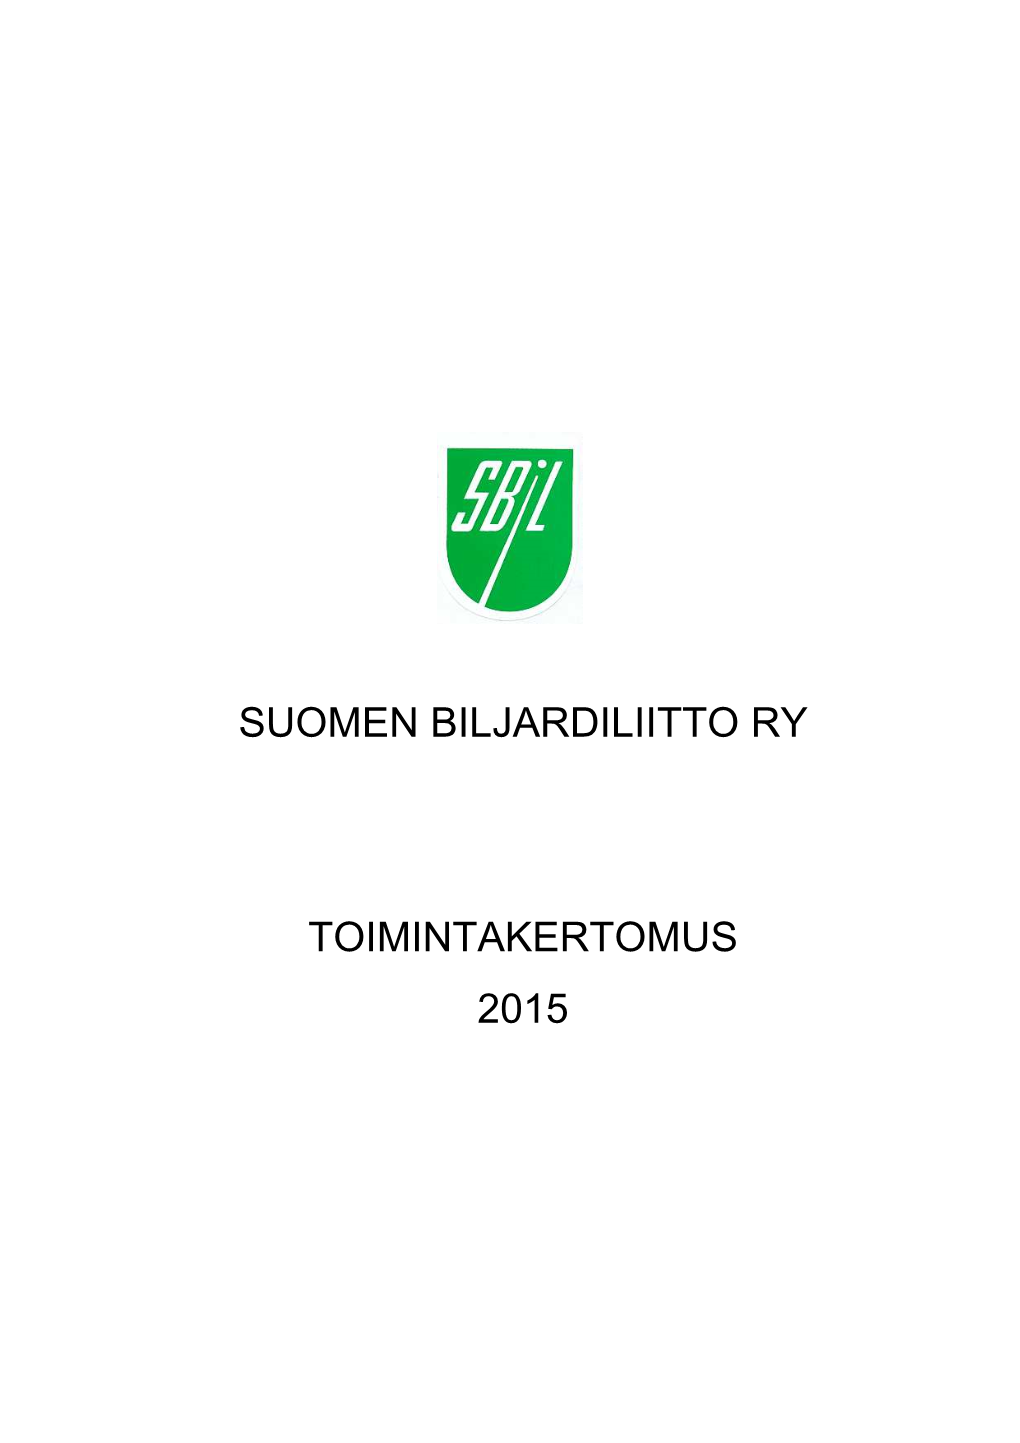 Sbil Toimintakertomus 2015